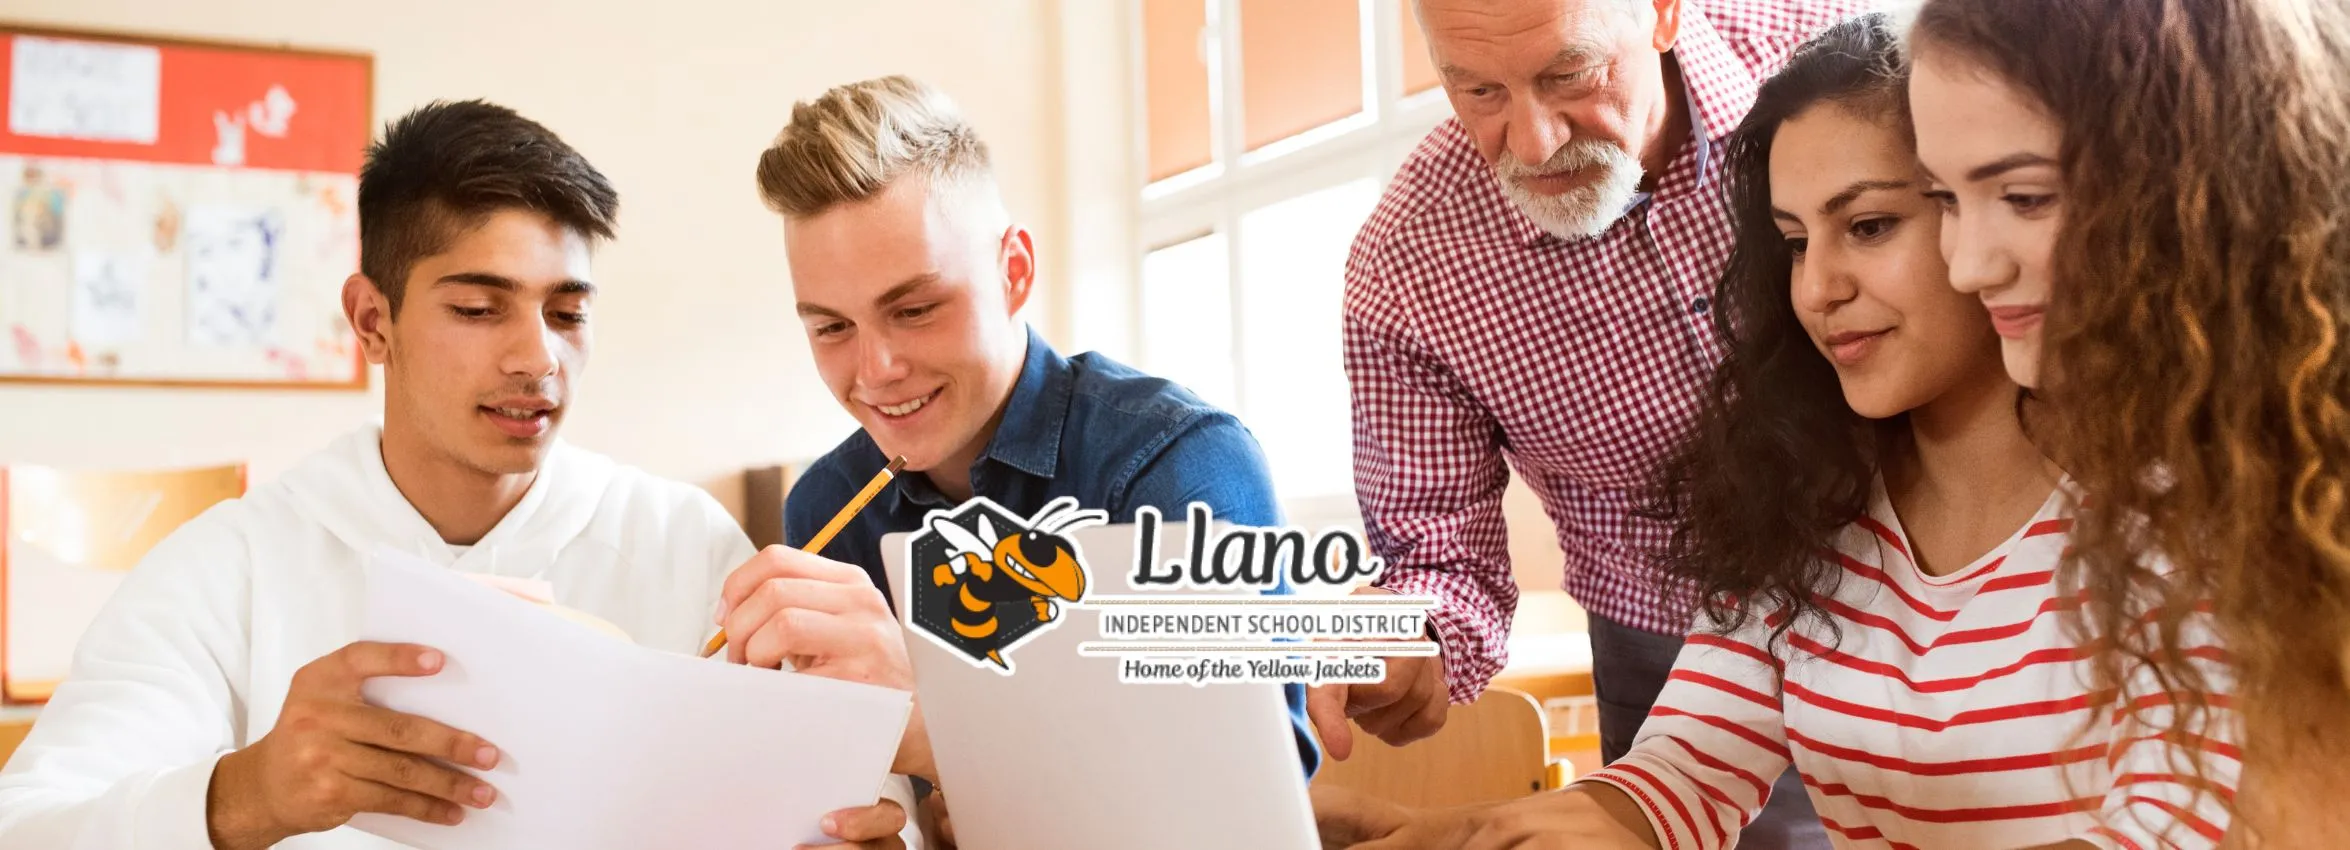 Llano-Independent-School-District-_Desktop_ET-